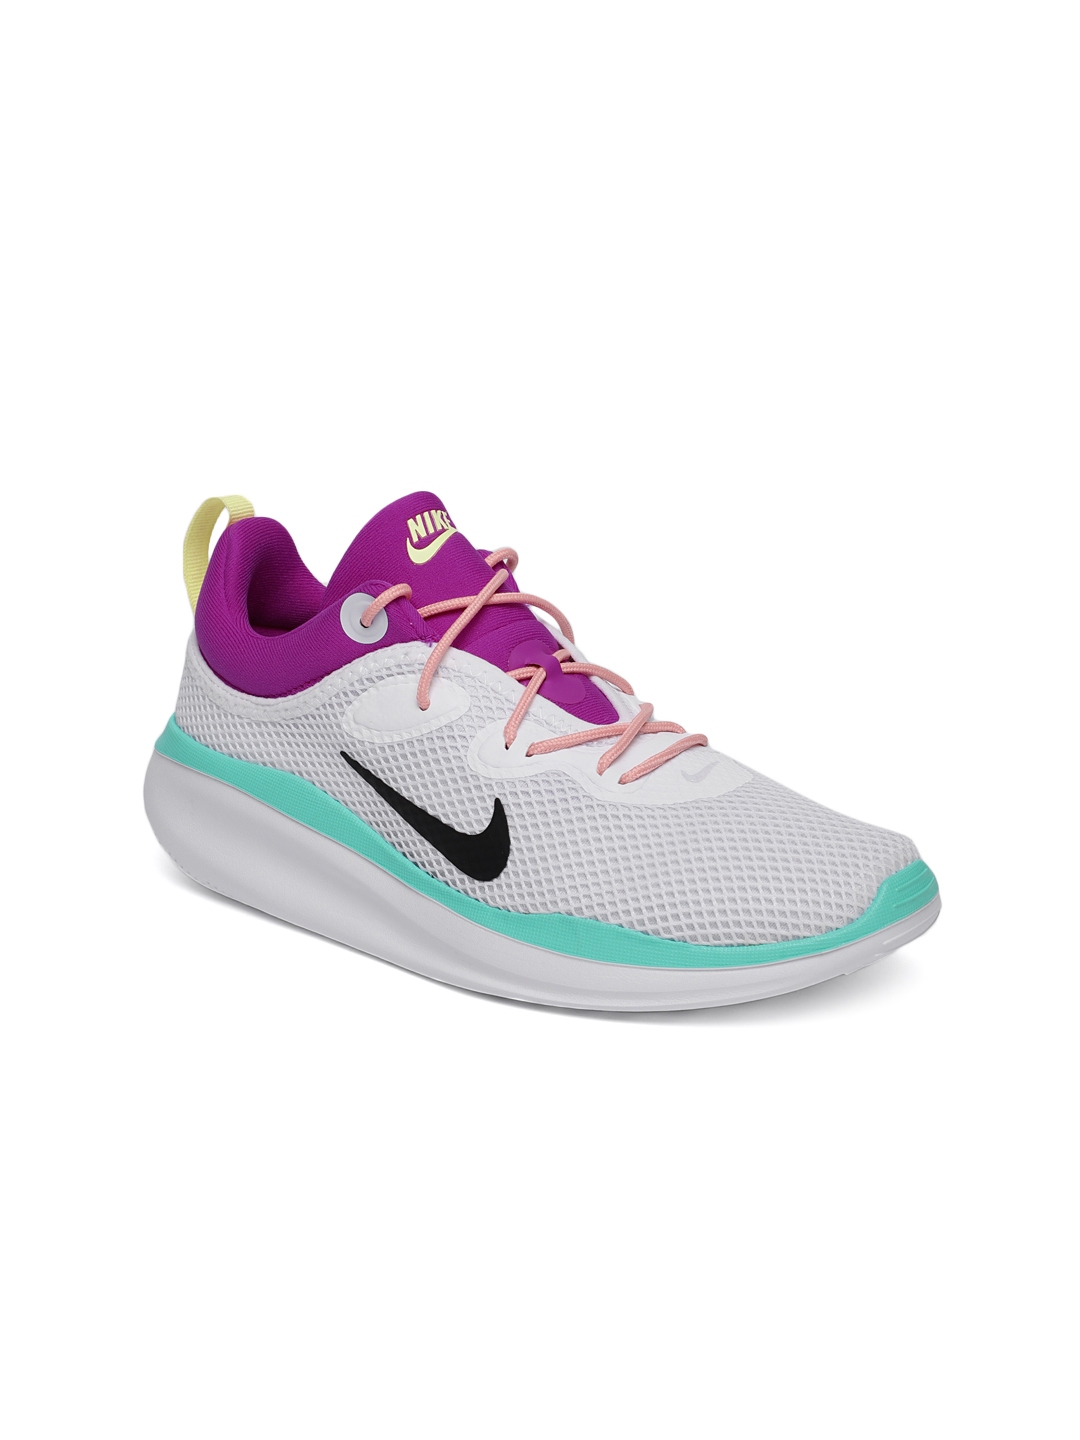 Buy Nike Women ACMI White Sneakers - Casual Shoes for Women 9798325 ...